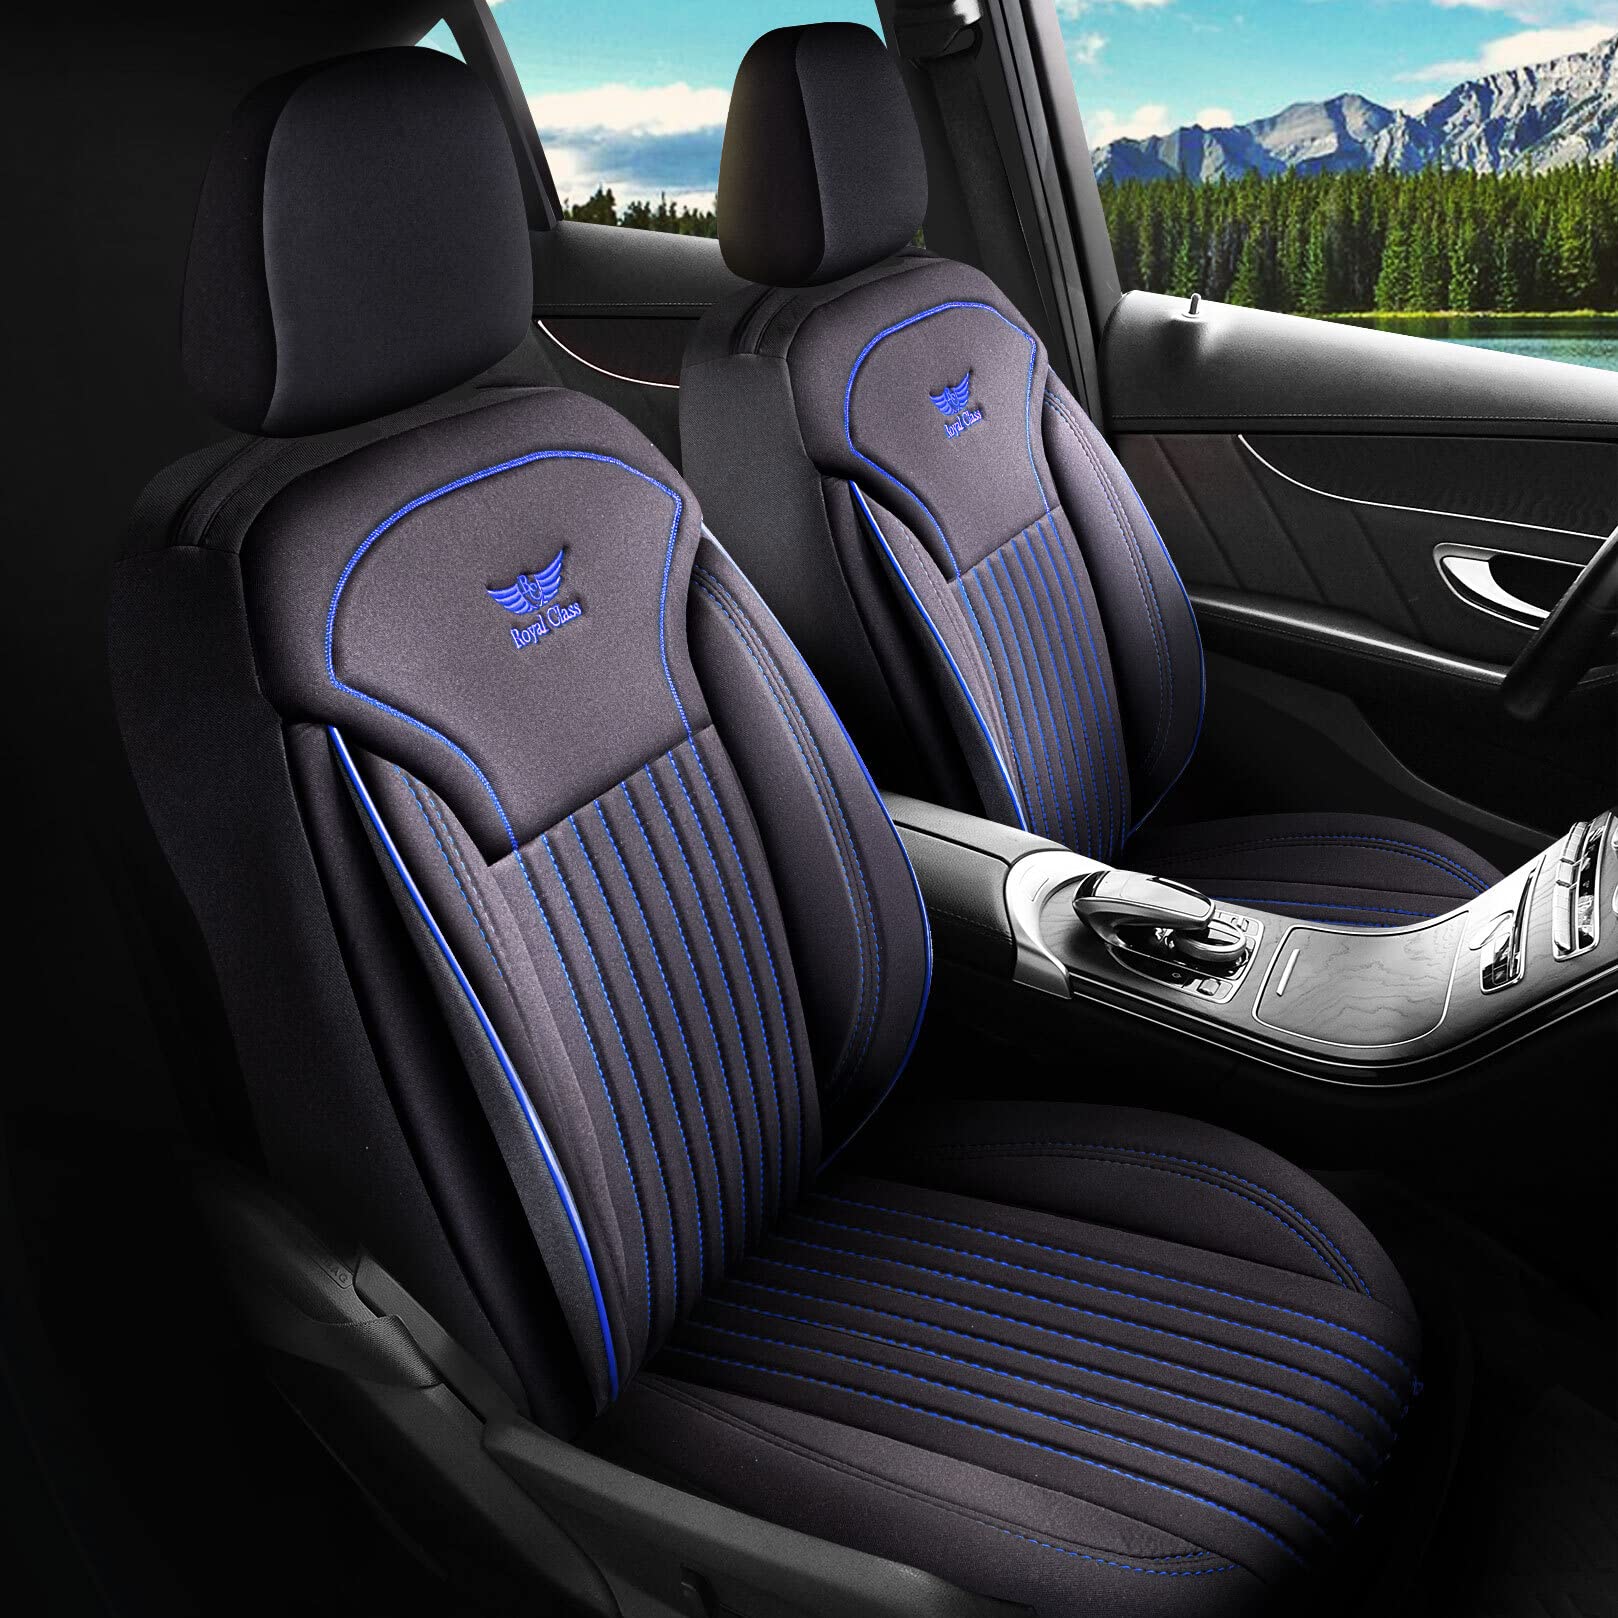 Royal Class Auto Sitzbezüge kompatibel für Nissan Juke in Schwarz Blau Fahrer und Beifahrer, Autositzbezug Schonbezug Sitzbezug Auto Komplettset 2-Sitze von RC Royal Class